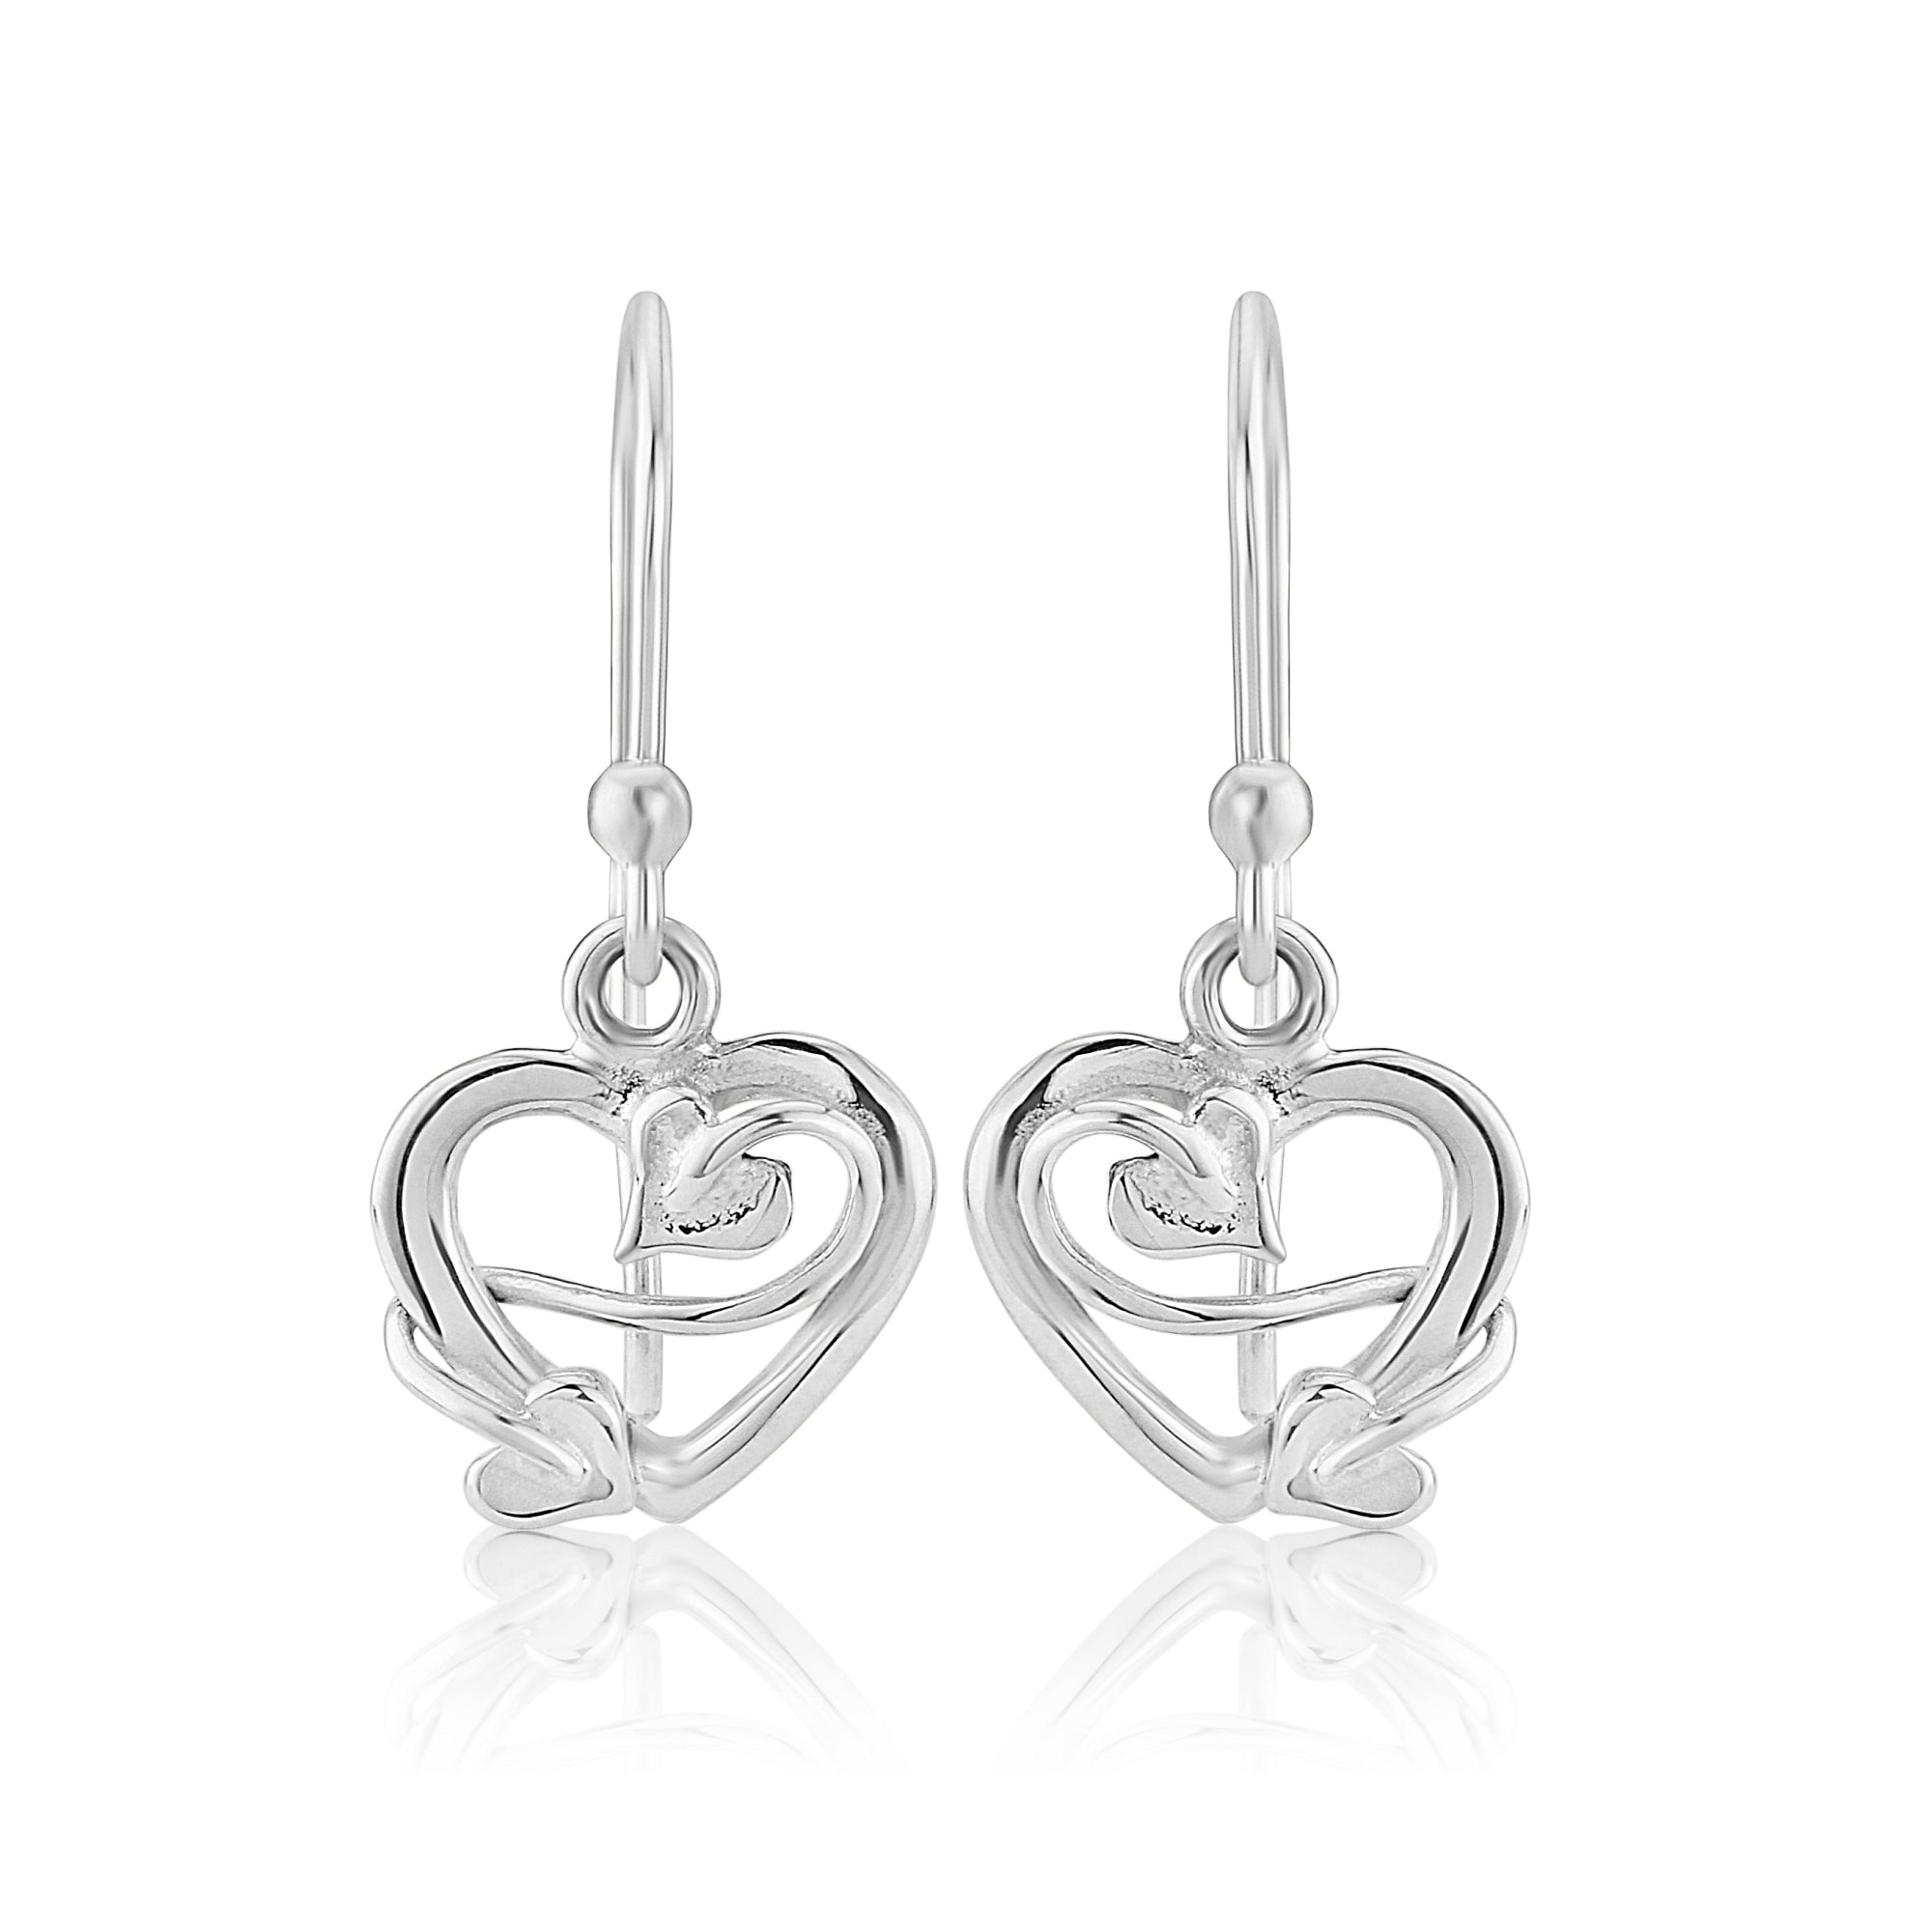 Sweetheart Drop Silver Earrings Small| Glenna Jewellery Scotland